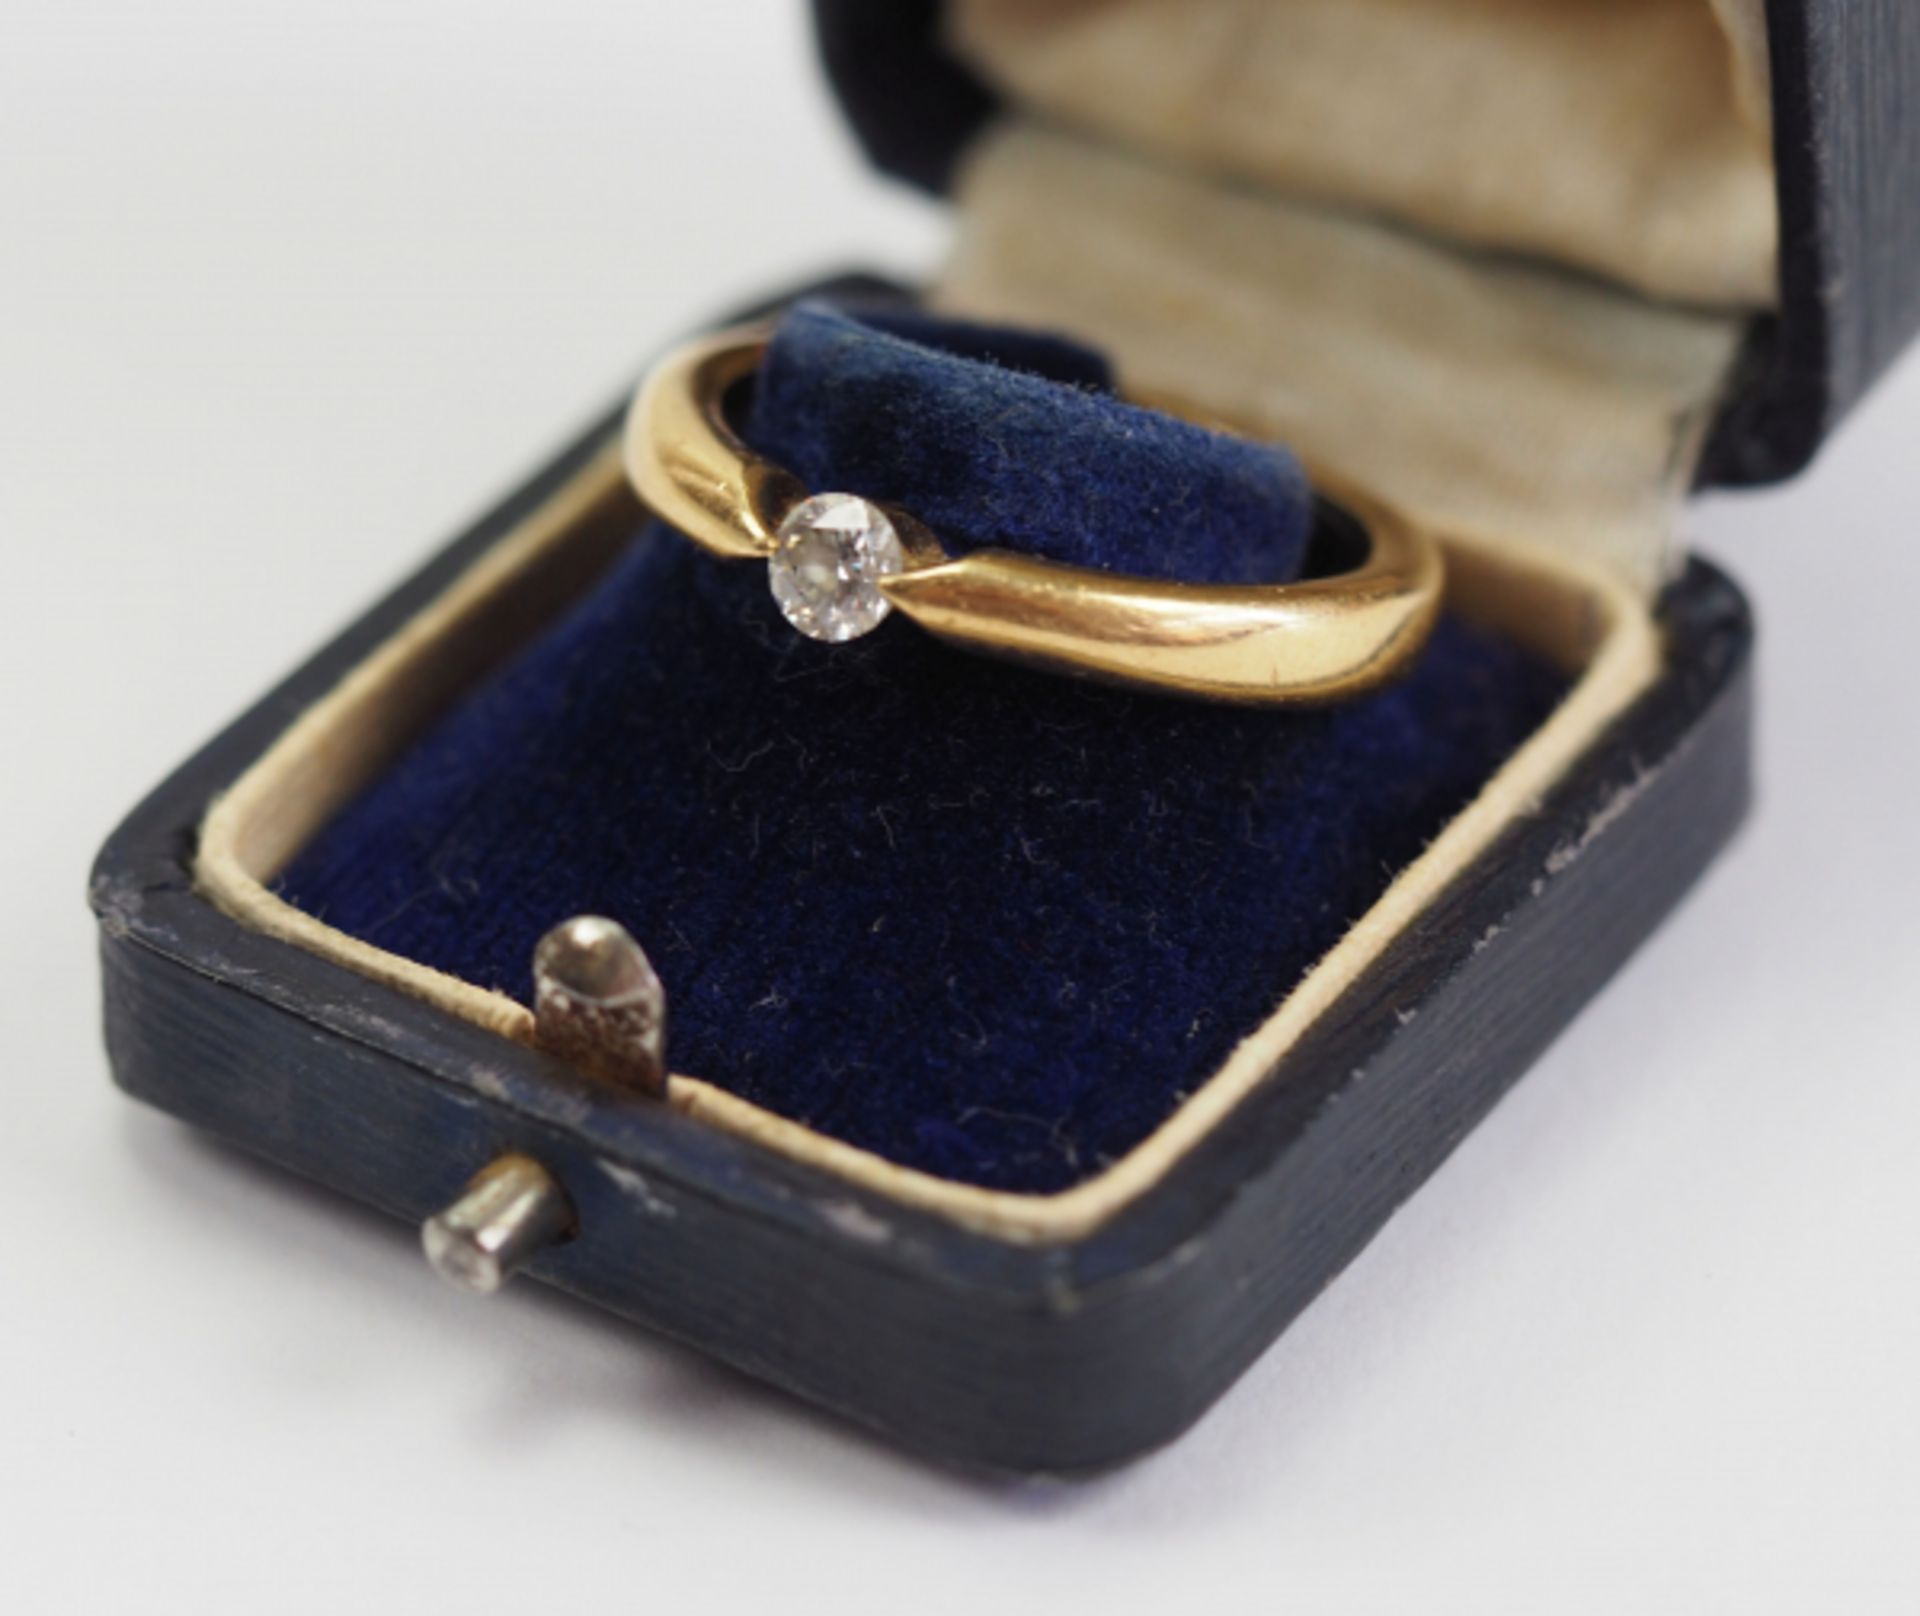 Diamant Ring - GOLD.Gold, 750 gepunzt, mit fein geschnittenem Diamanten, im Etui.Innendurchmesser: - Image 2 of 4